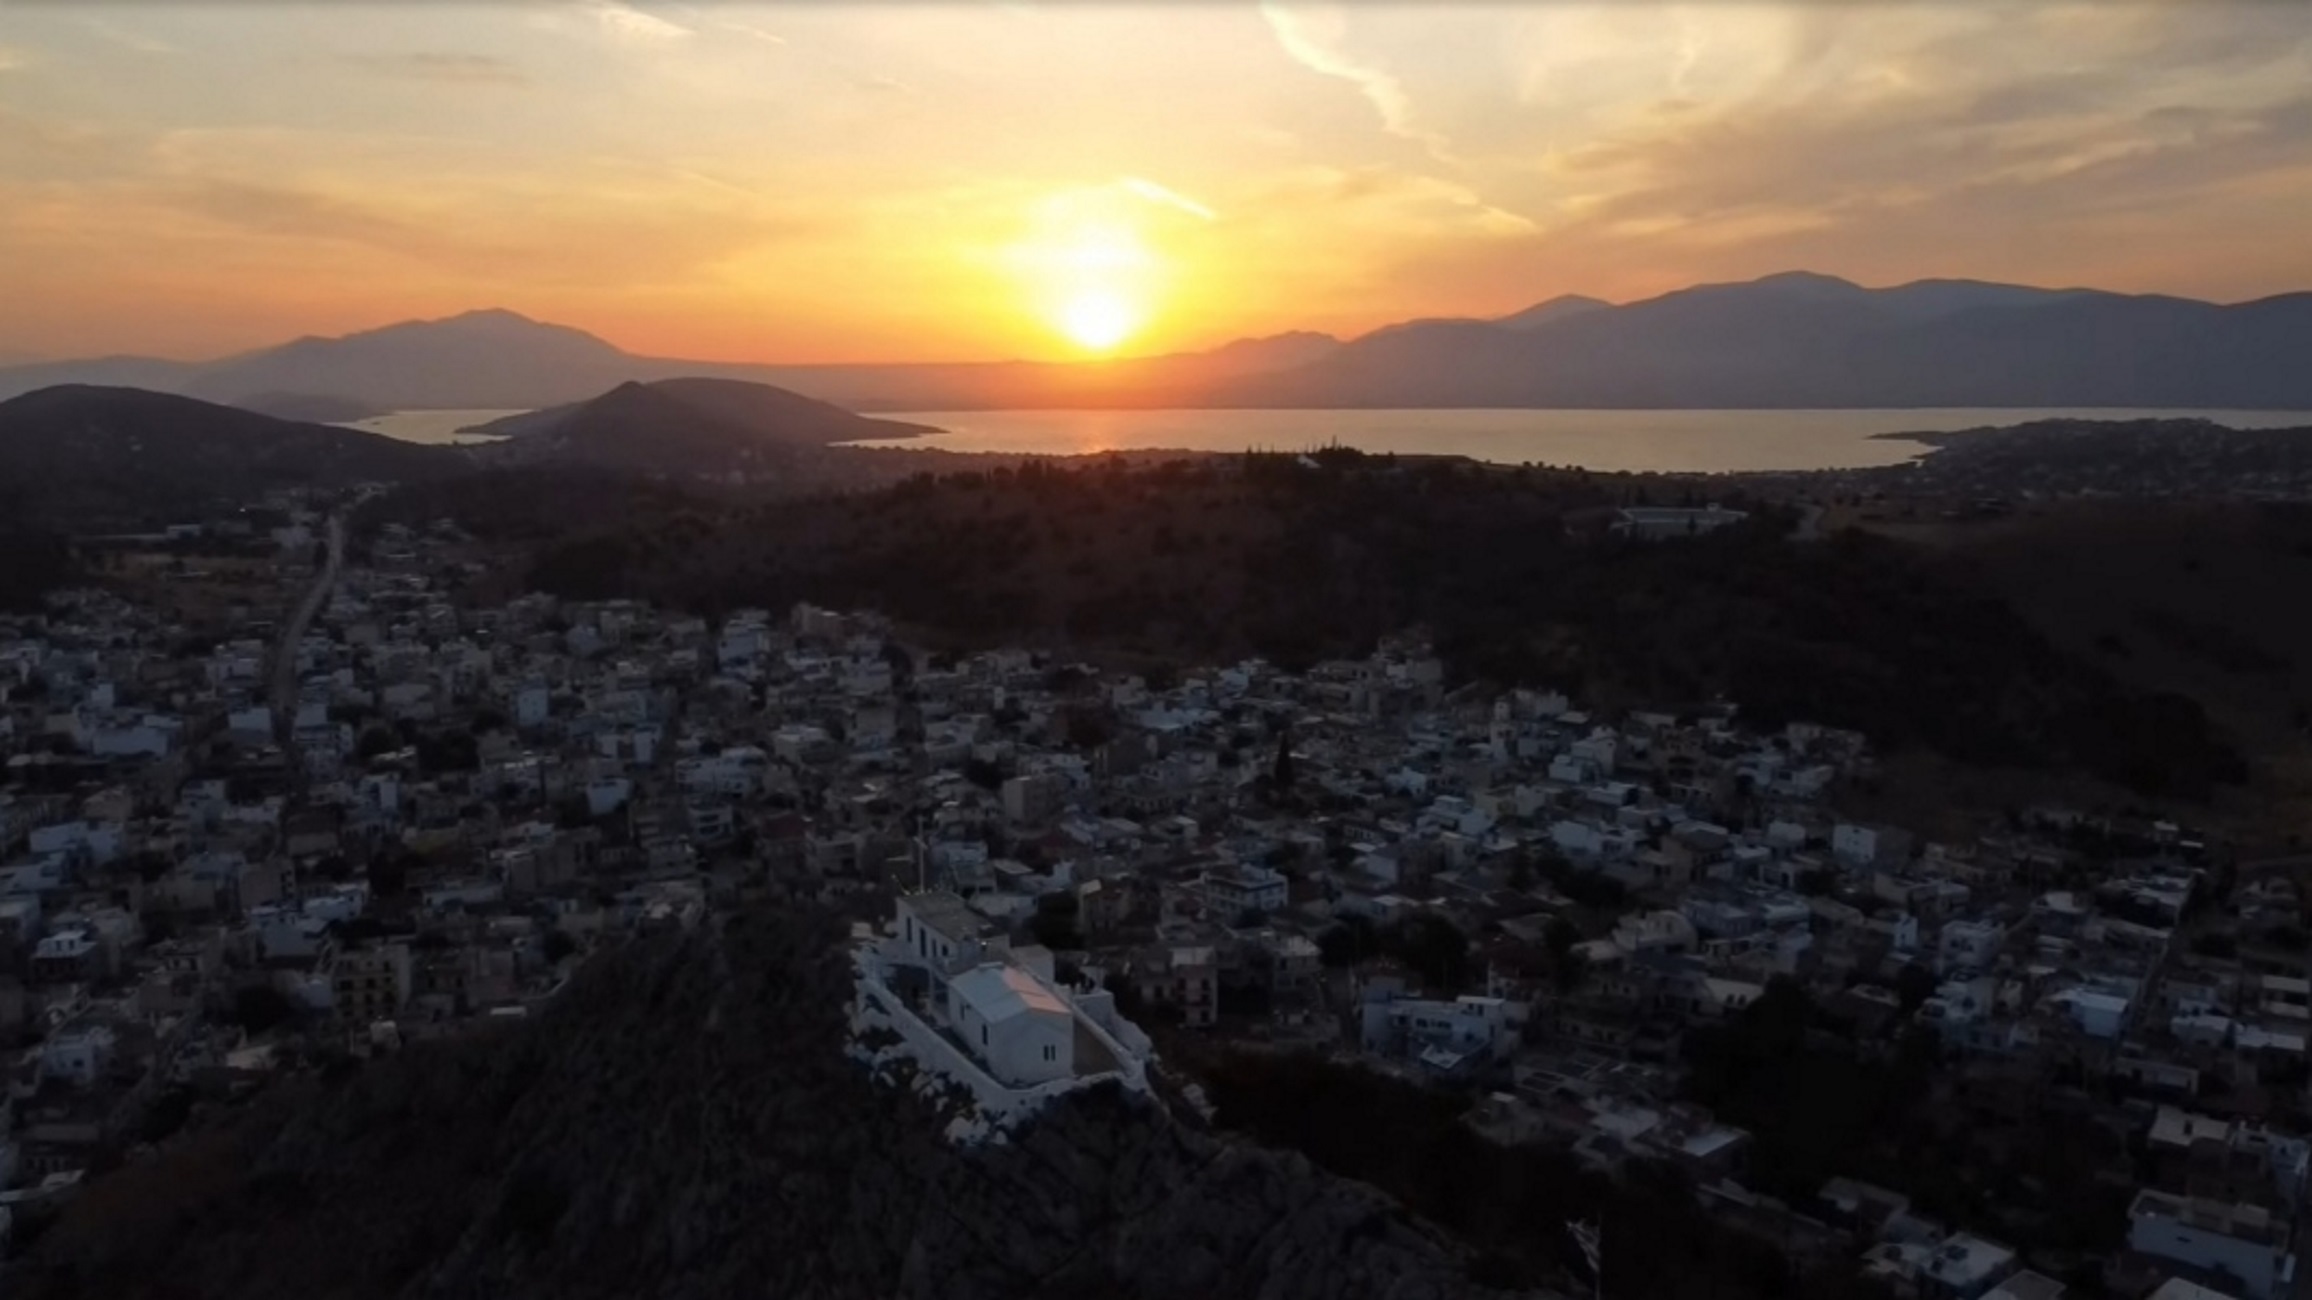 Σαλαμίνα: Το ξεχωριστό ηλιοβασίλεμα από την εκκλησία του Προφήτη Ηλία – Βίντεο από drone